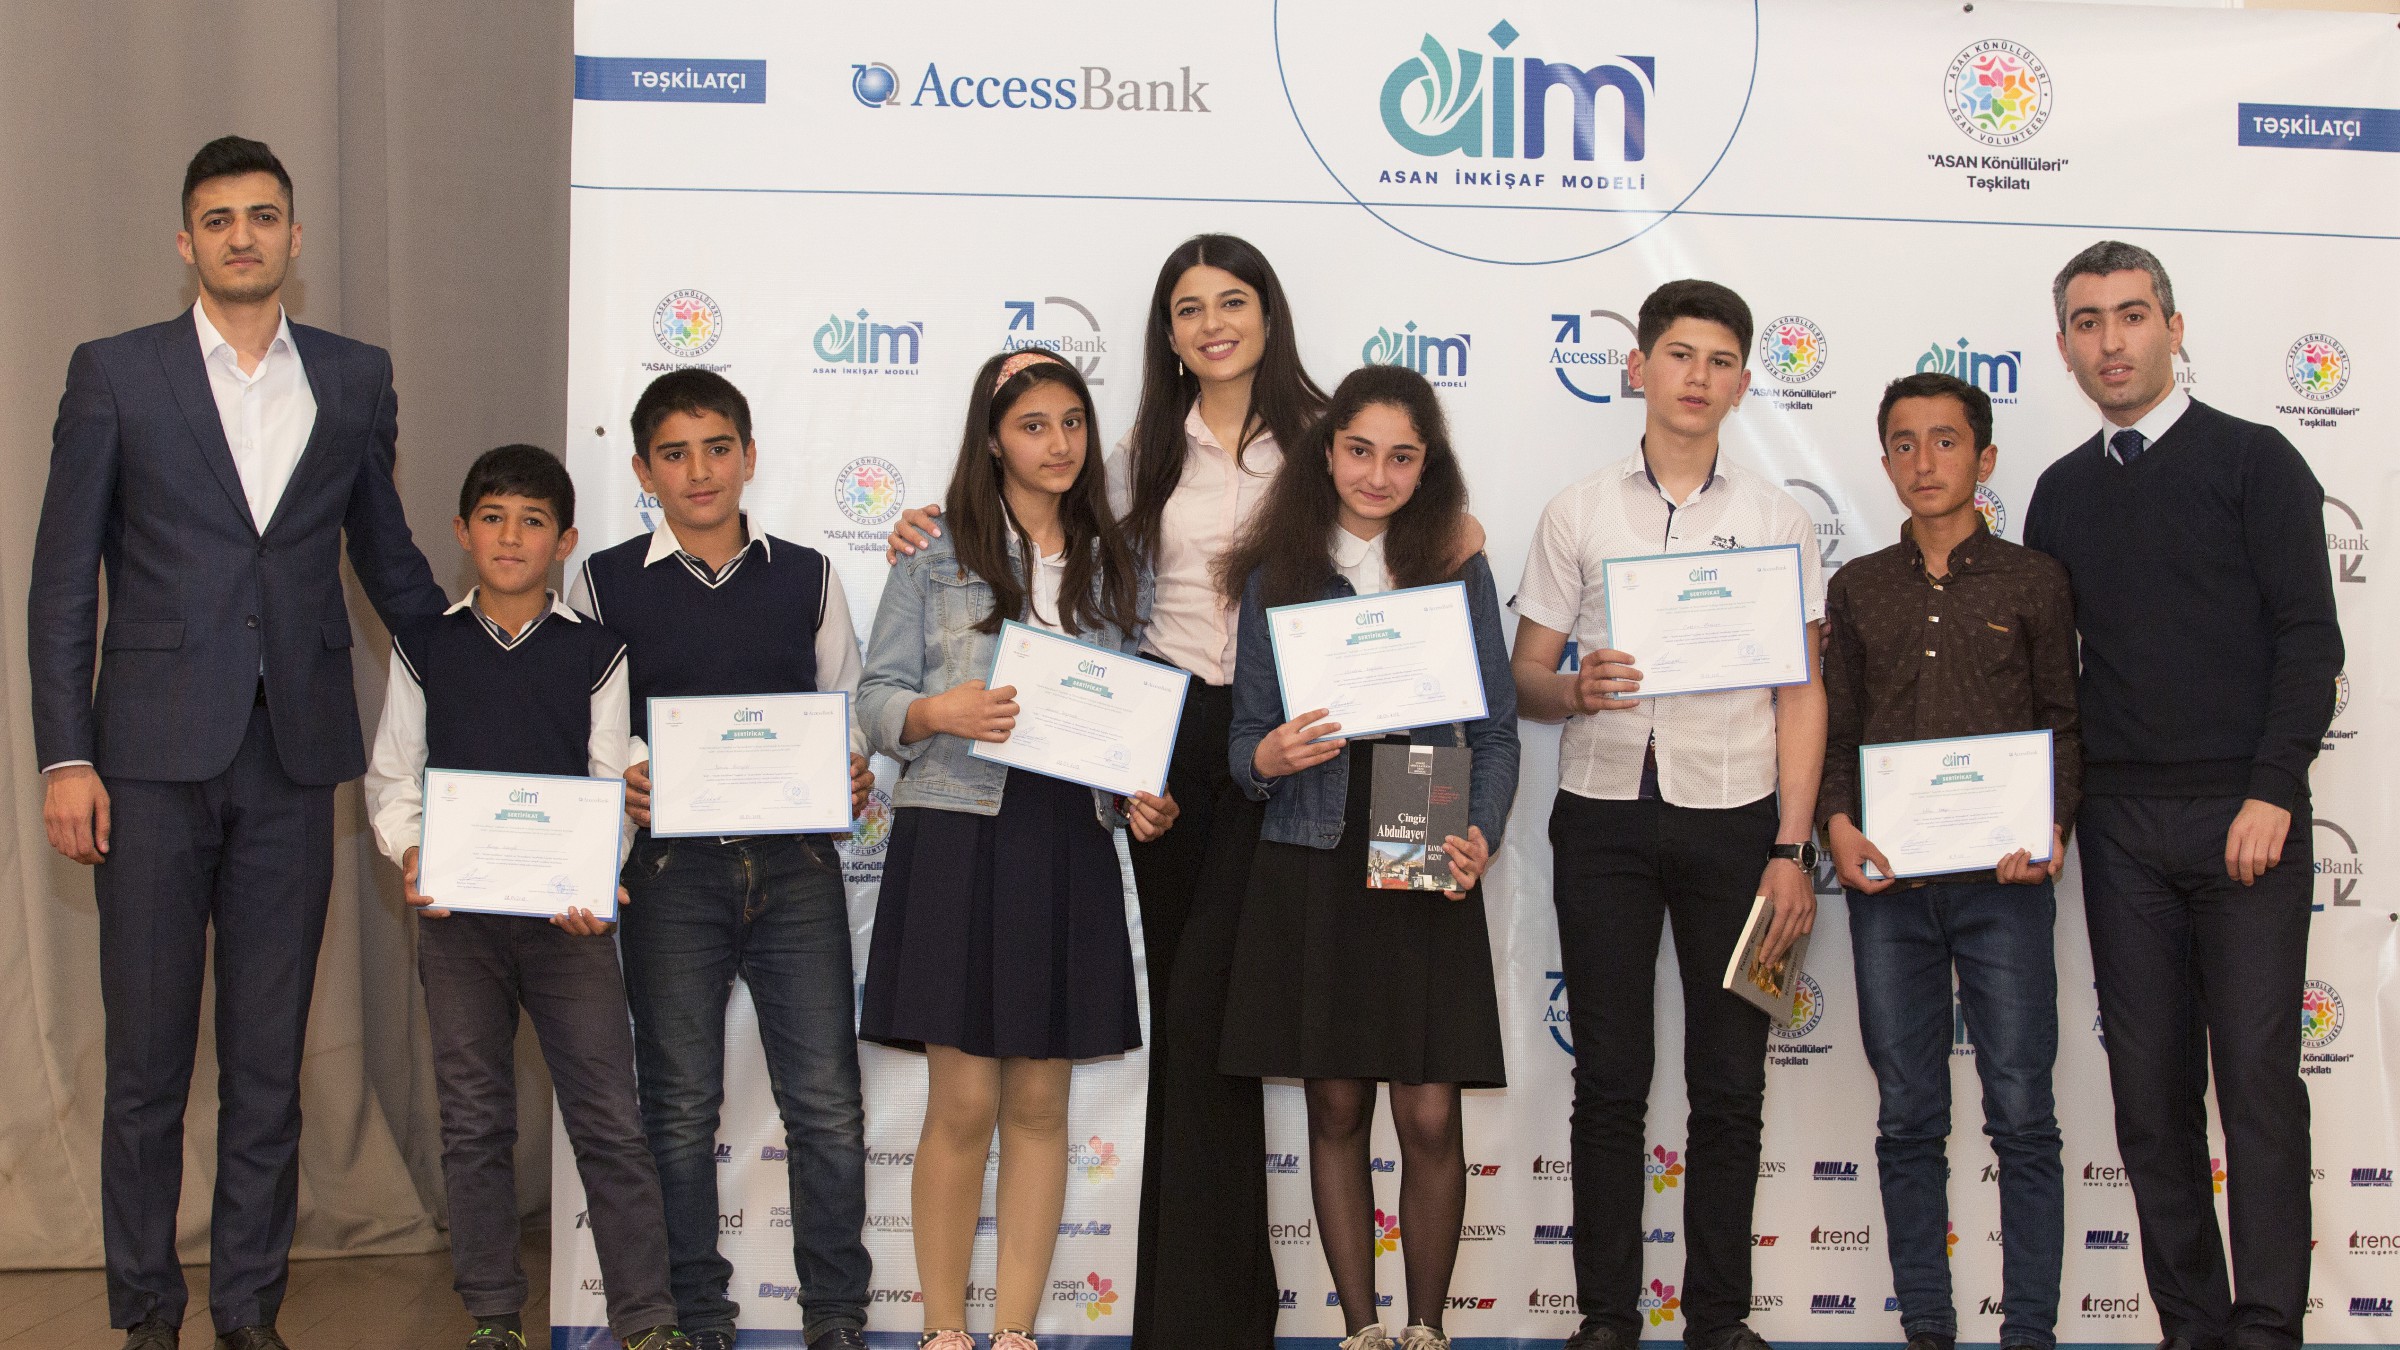 AccessBank и ASAN Könüllüləri продолжают реализацию проекта AİM